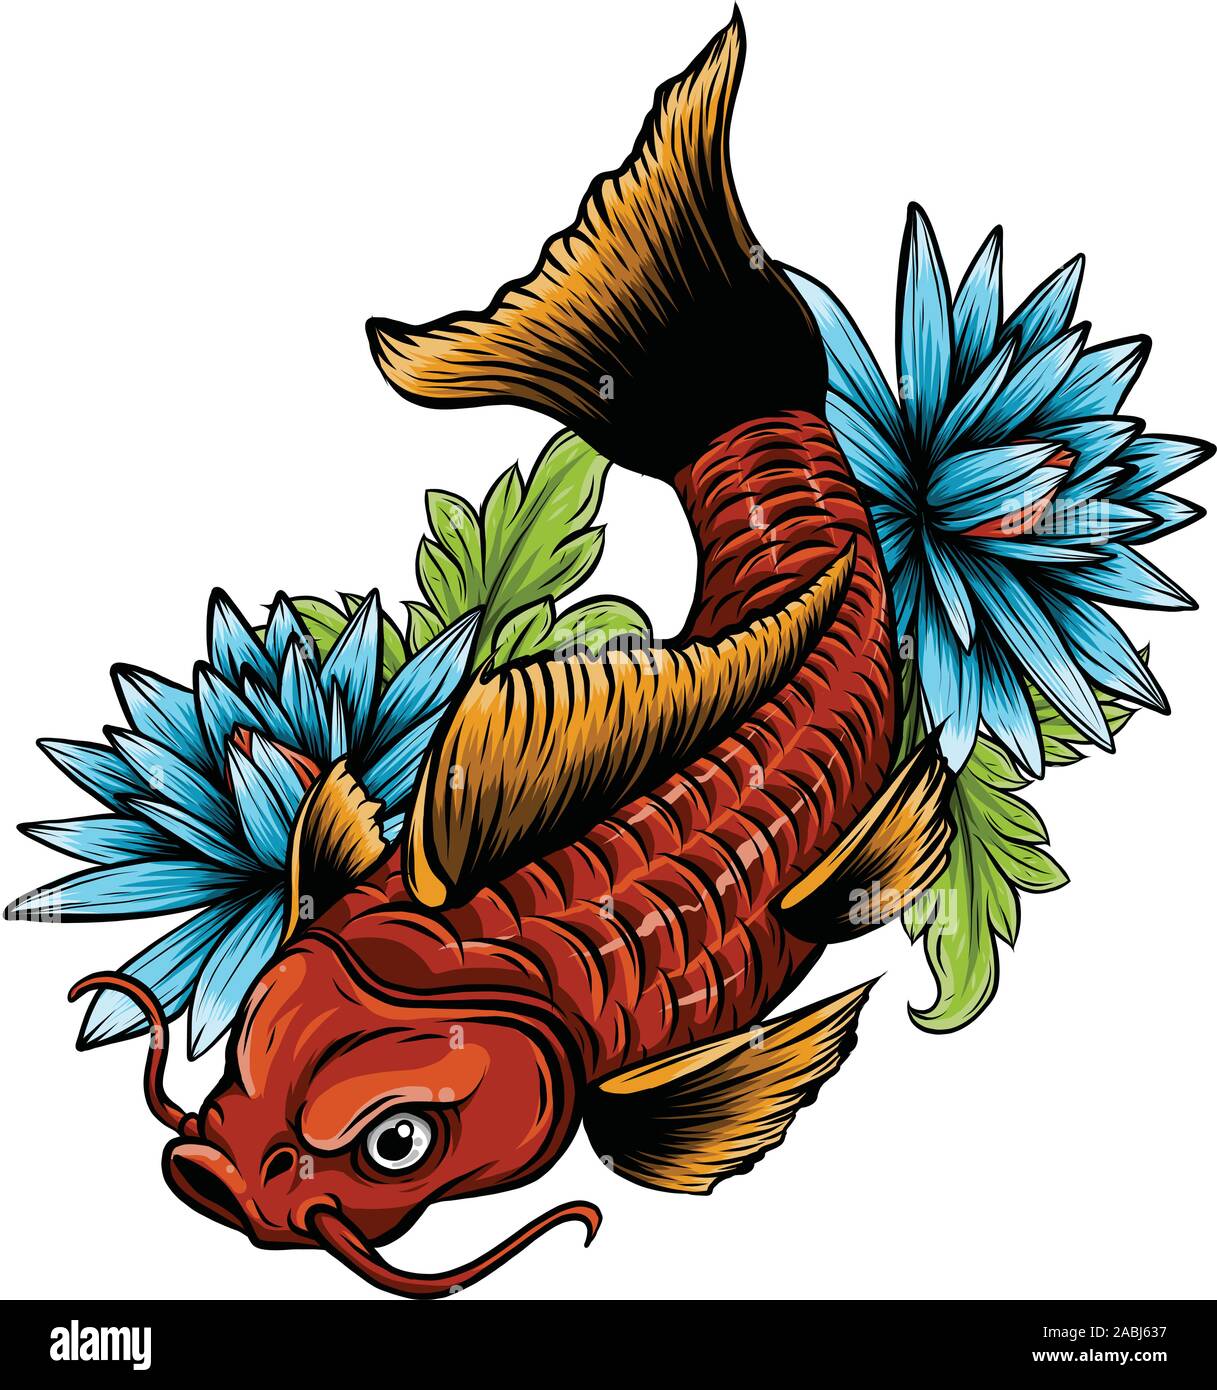 Meaningful Koi Fish Tattoo Ideas  Designs  Tattoo Glee